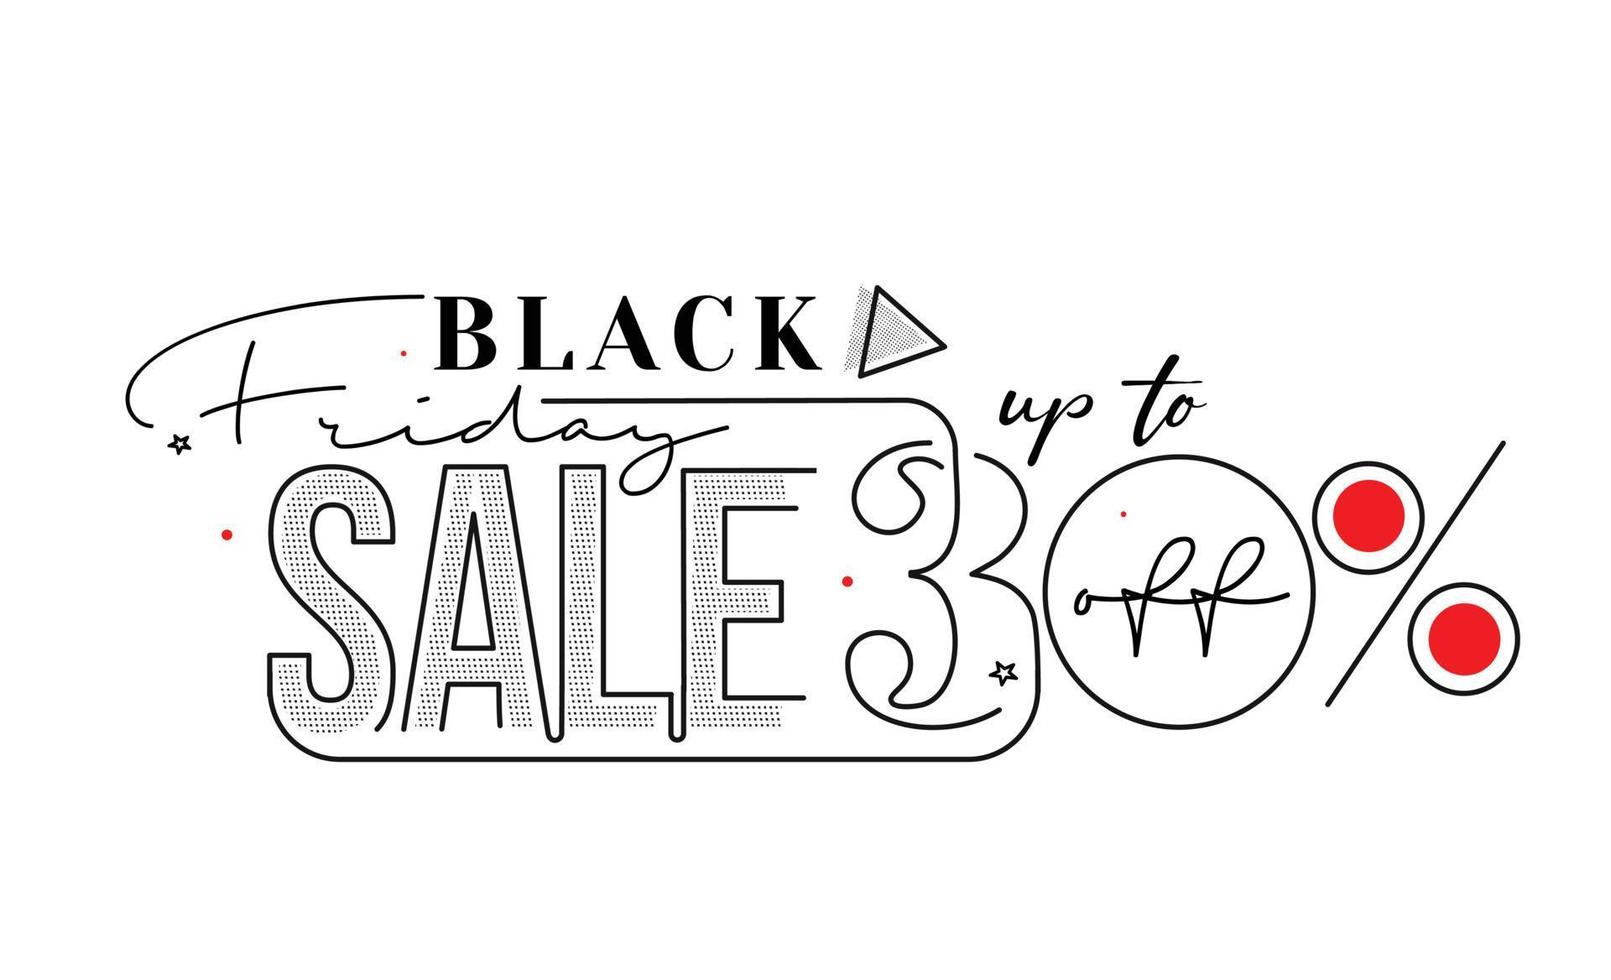 Black Friday Sale Promotion Poster oder Banner Design, Sonderangebot 30 Verkauf, Promotion und Shopping Vector Template.